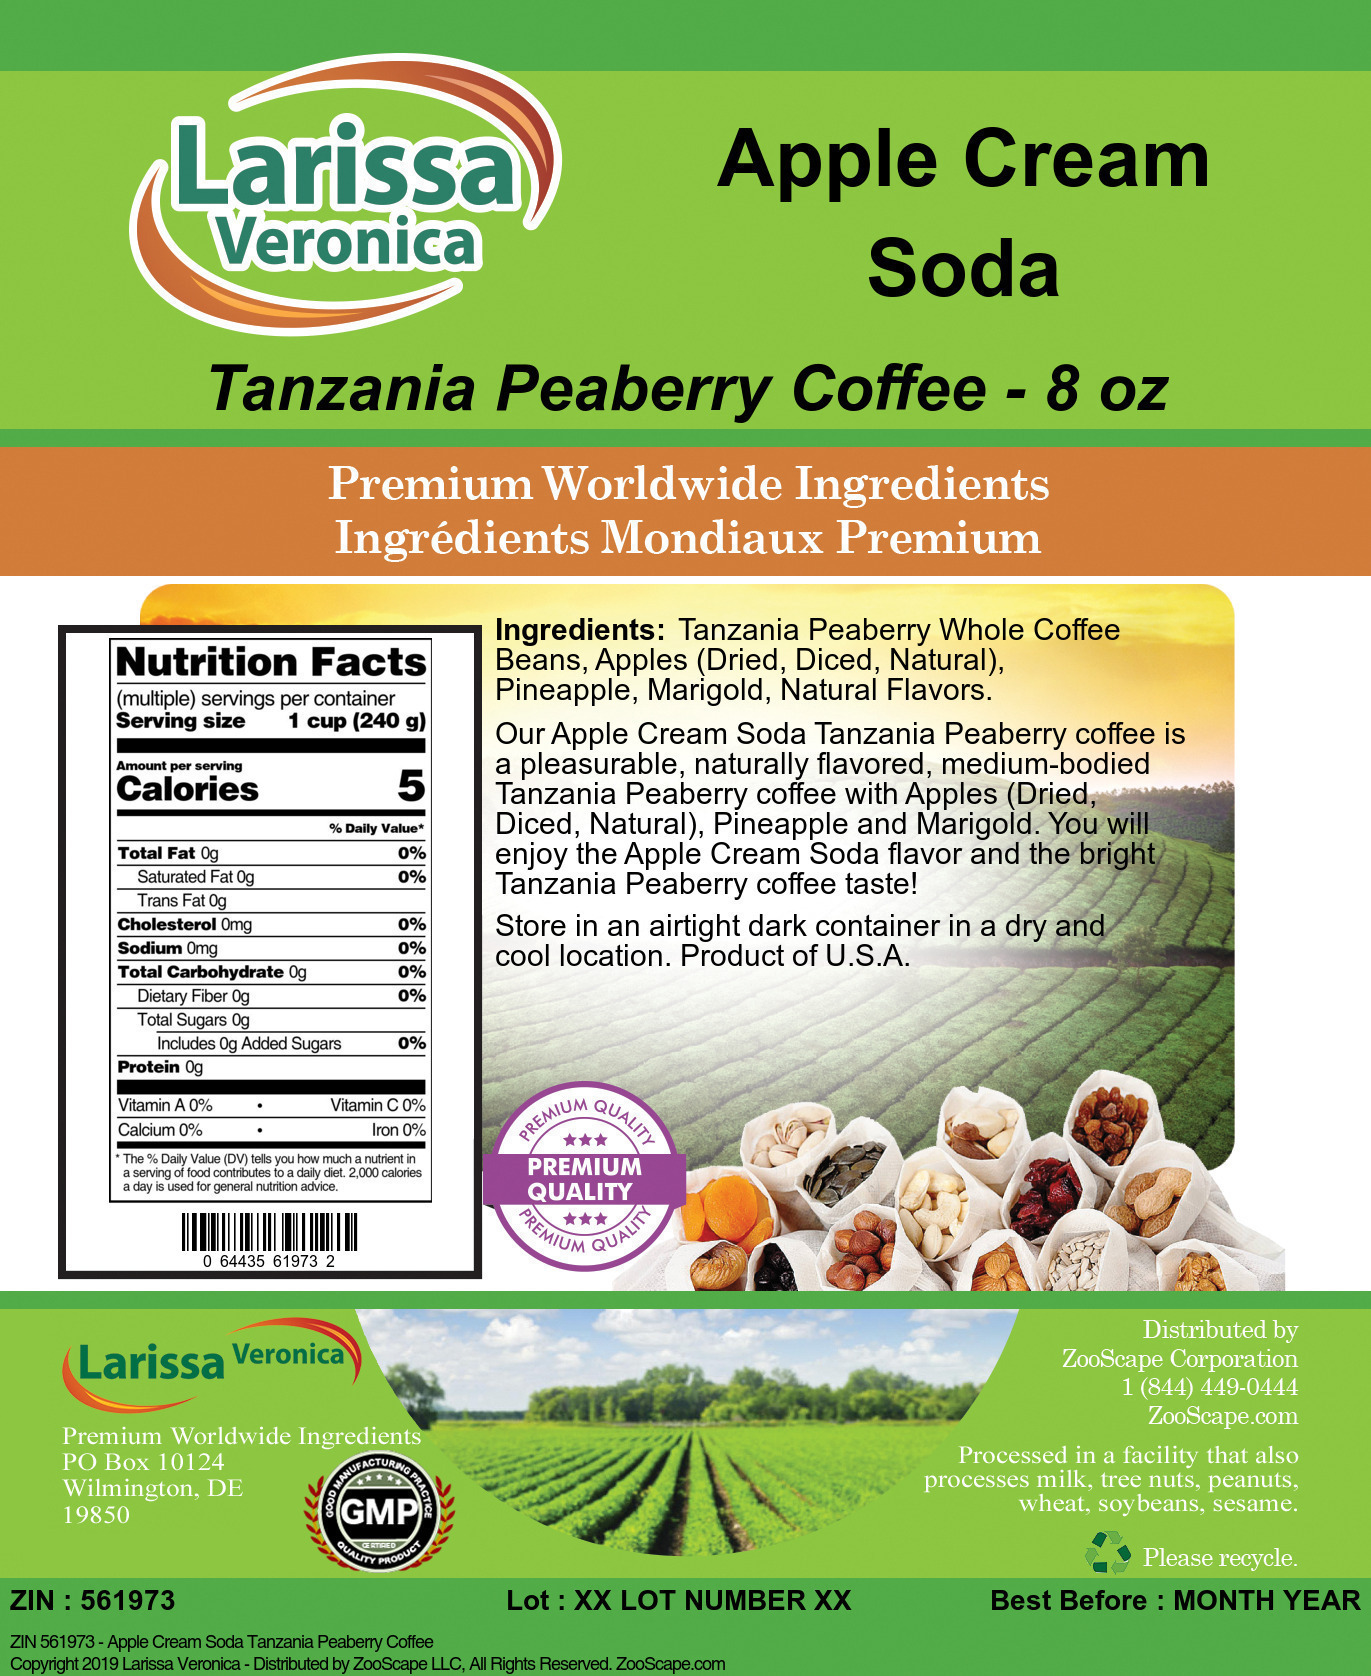 Apple Cream Soda Tanzania Peaberry Coffee - Label